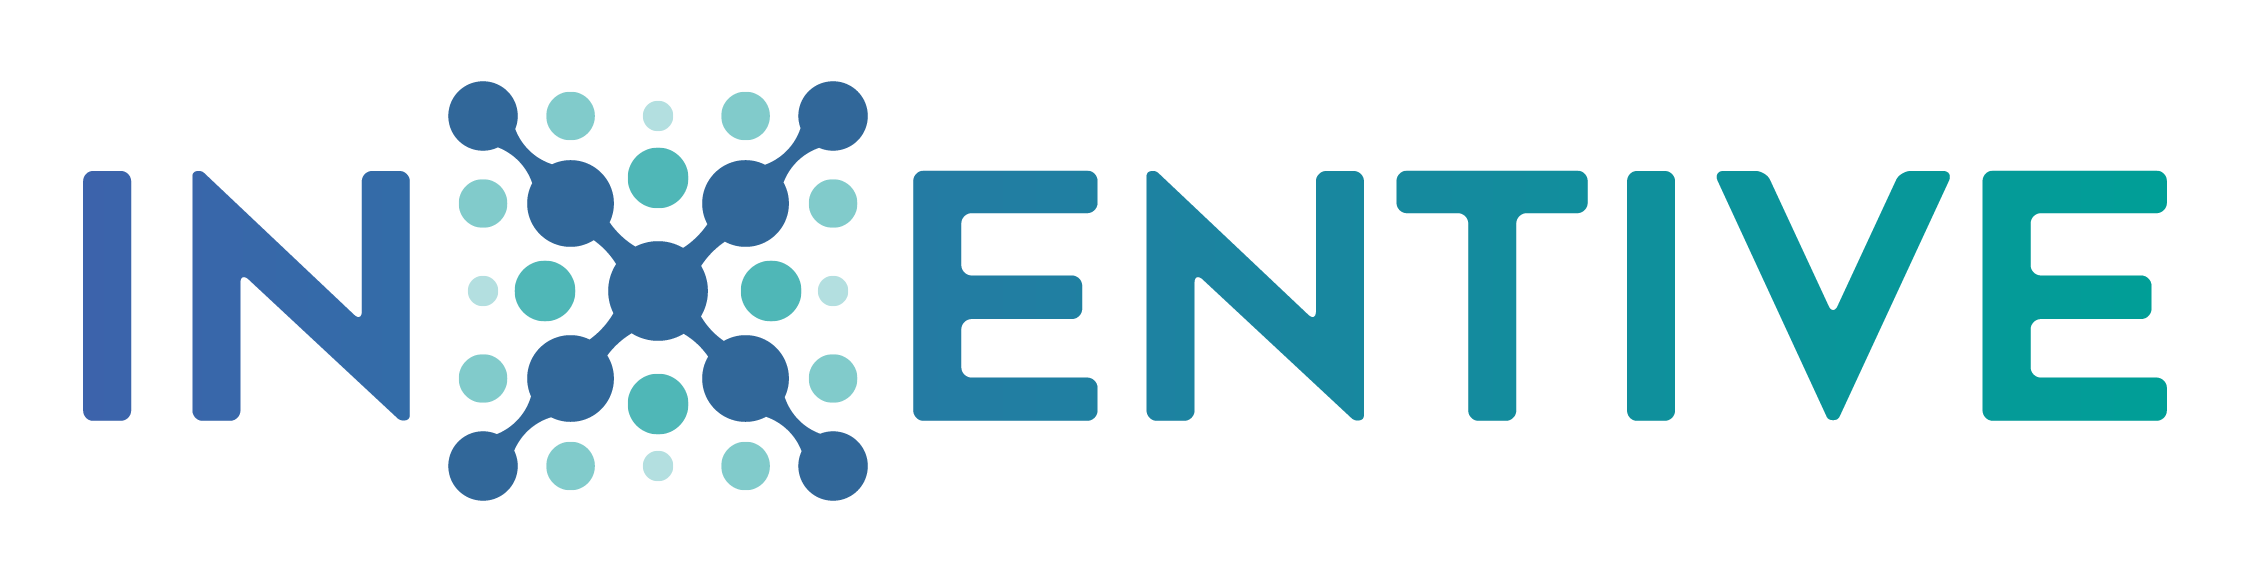 Logo del prodotto Inxentive